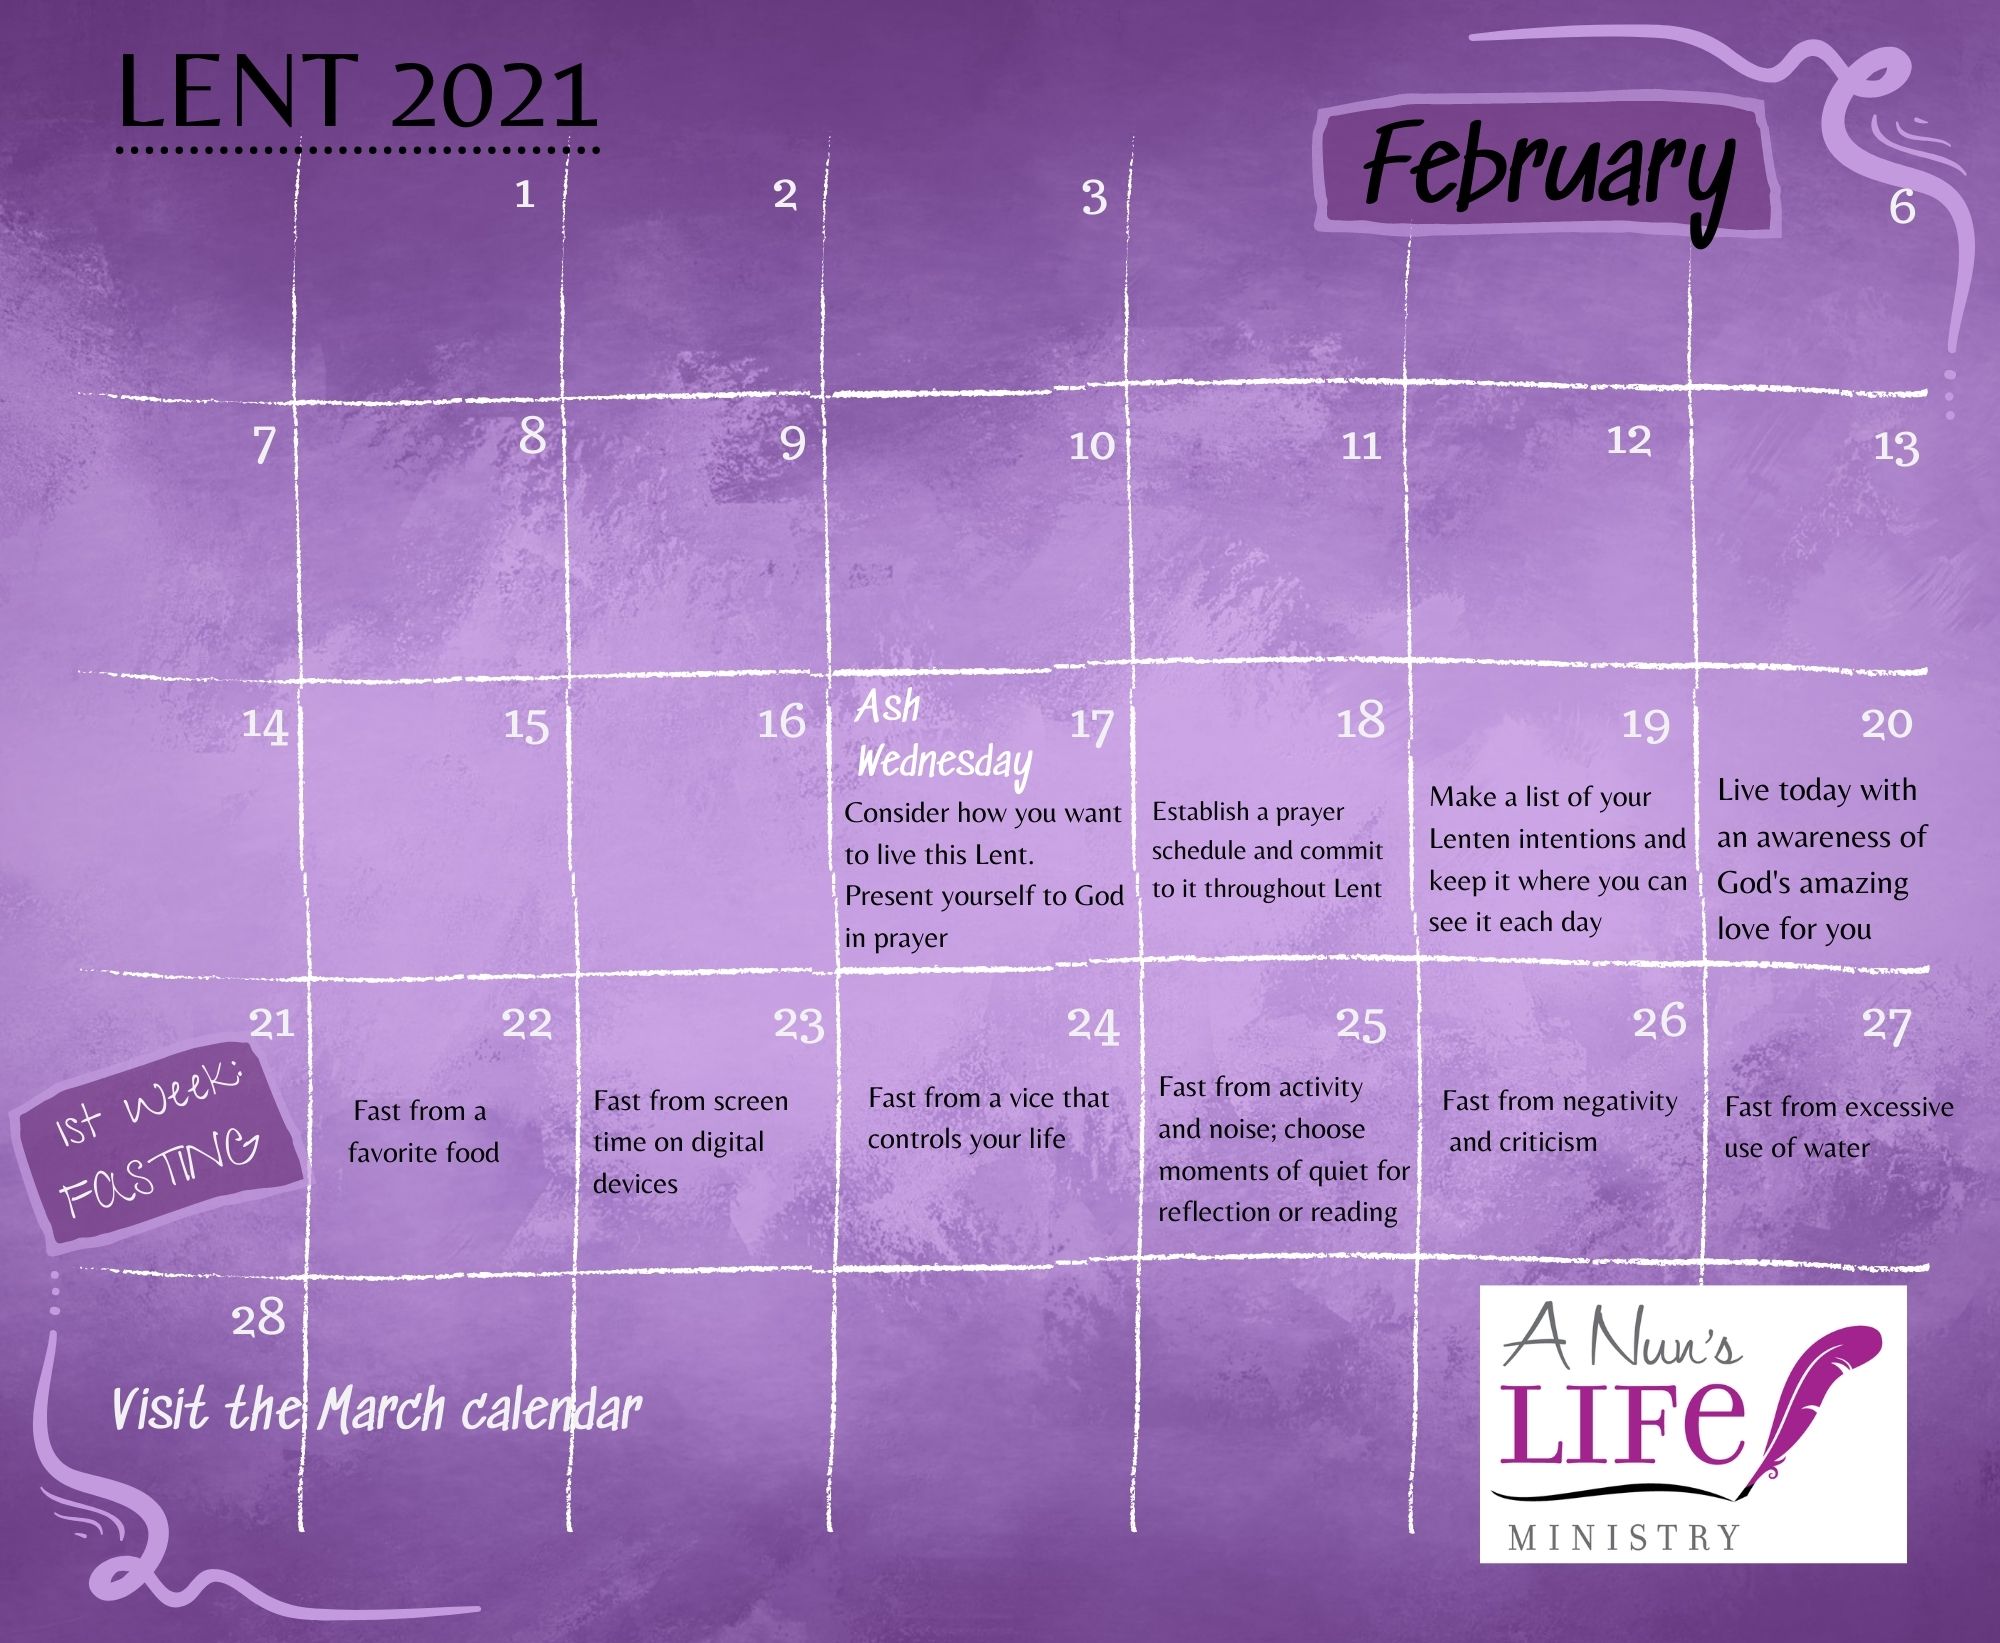 Lenten Calendar 2021 | A Nun's Life Ministry